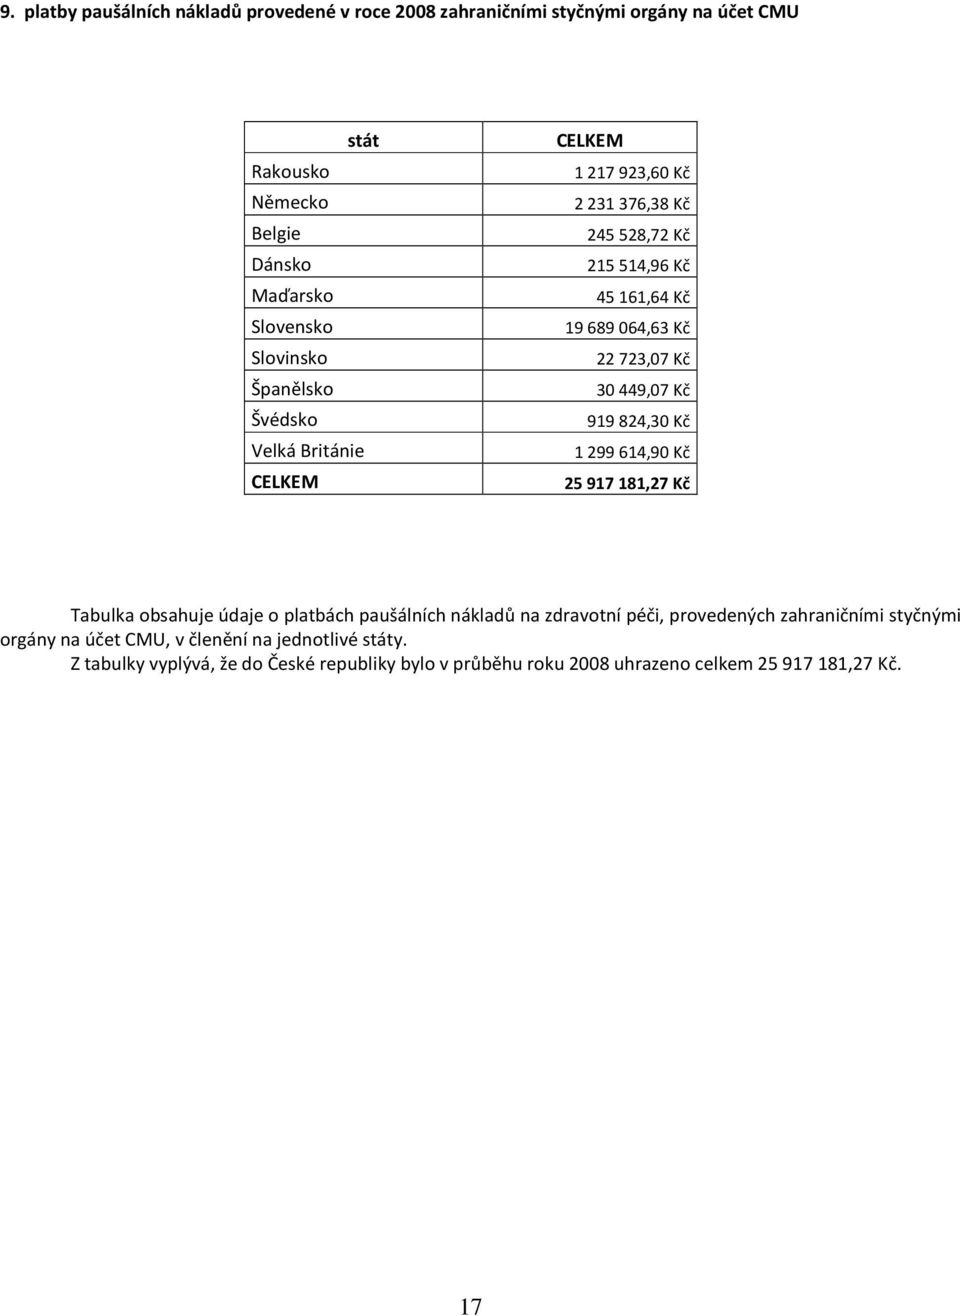 30449,07 Kč 919824,30 Kč 1299614,90 Kč 25917181,27 Kč Tabulka obsahuje údaje o platbách paušálních nákladů na zdravotní péči, provedených zahraničními